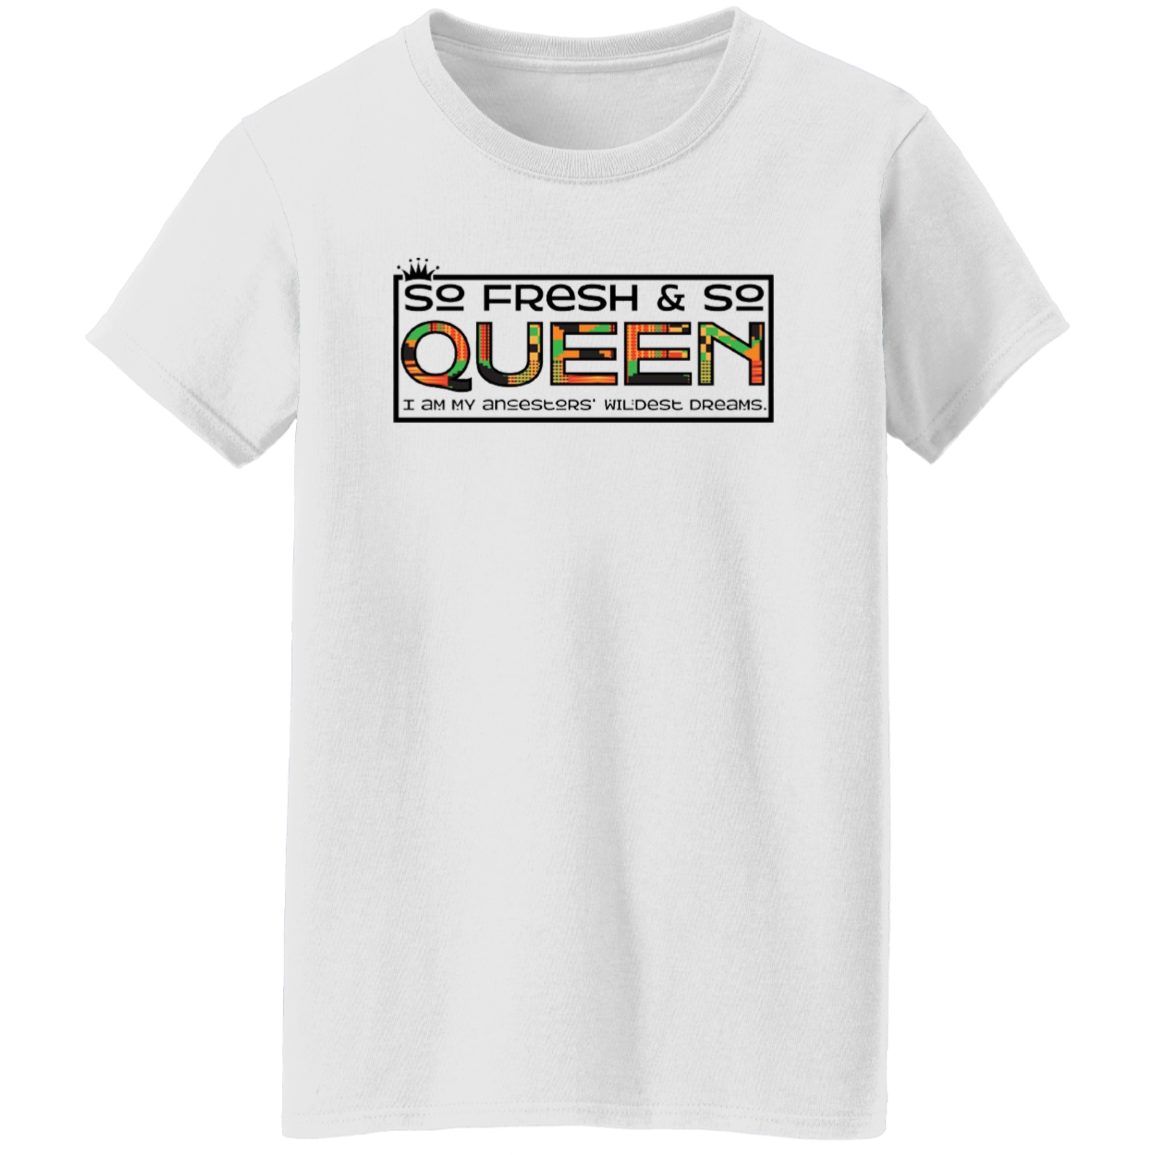 So Fresh, So Queen T-Shirt